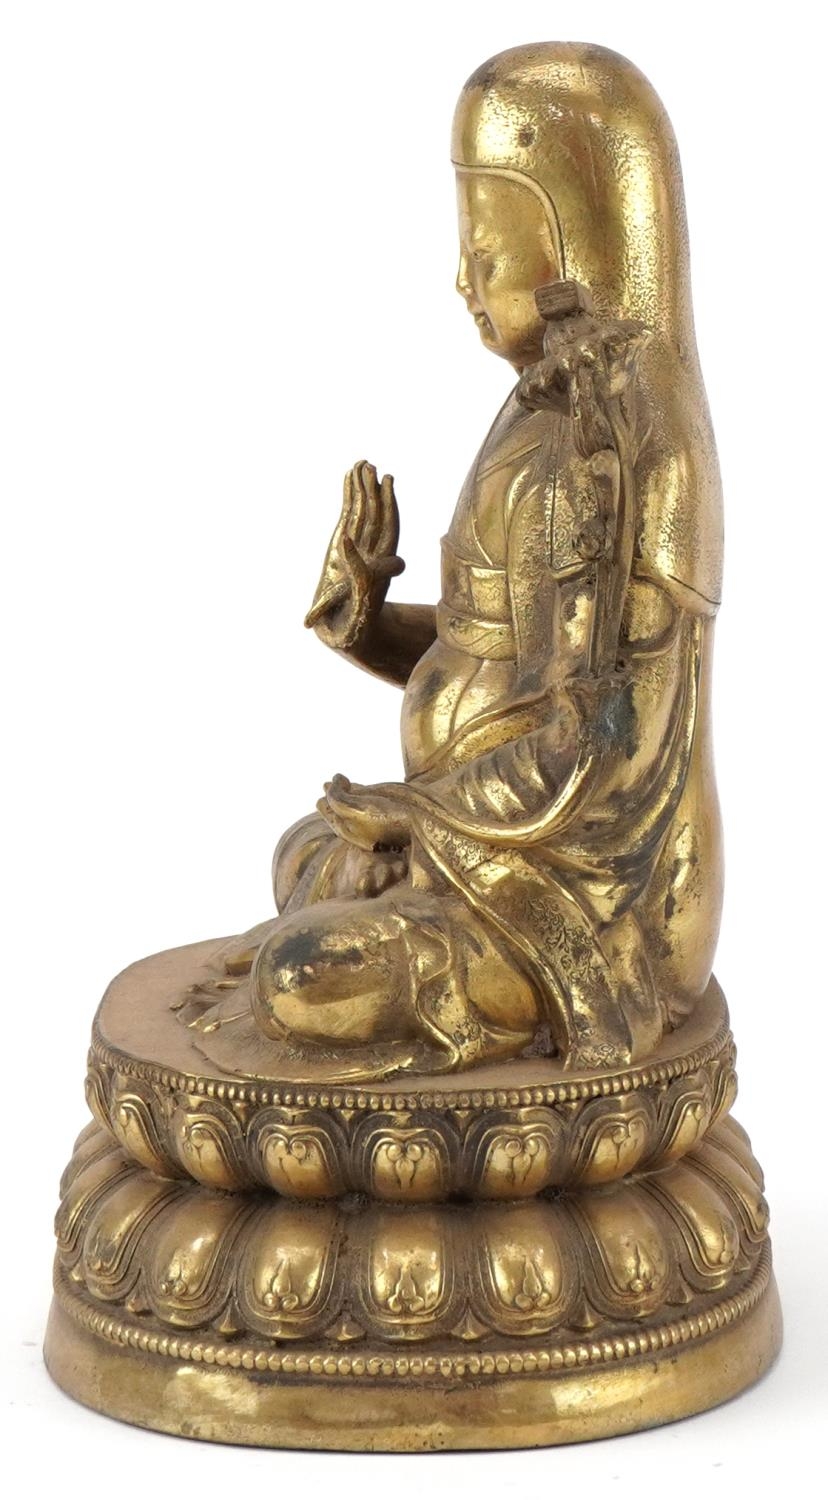 Chino Tibetan gilt bronze Buddha, 24cm high - Image 3 of 7